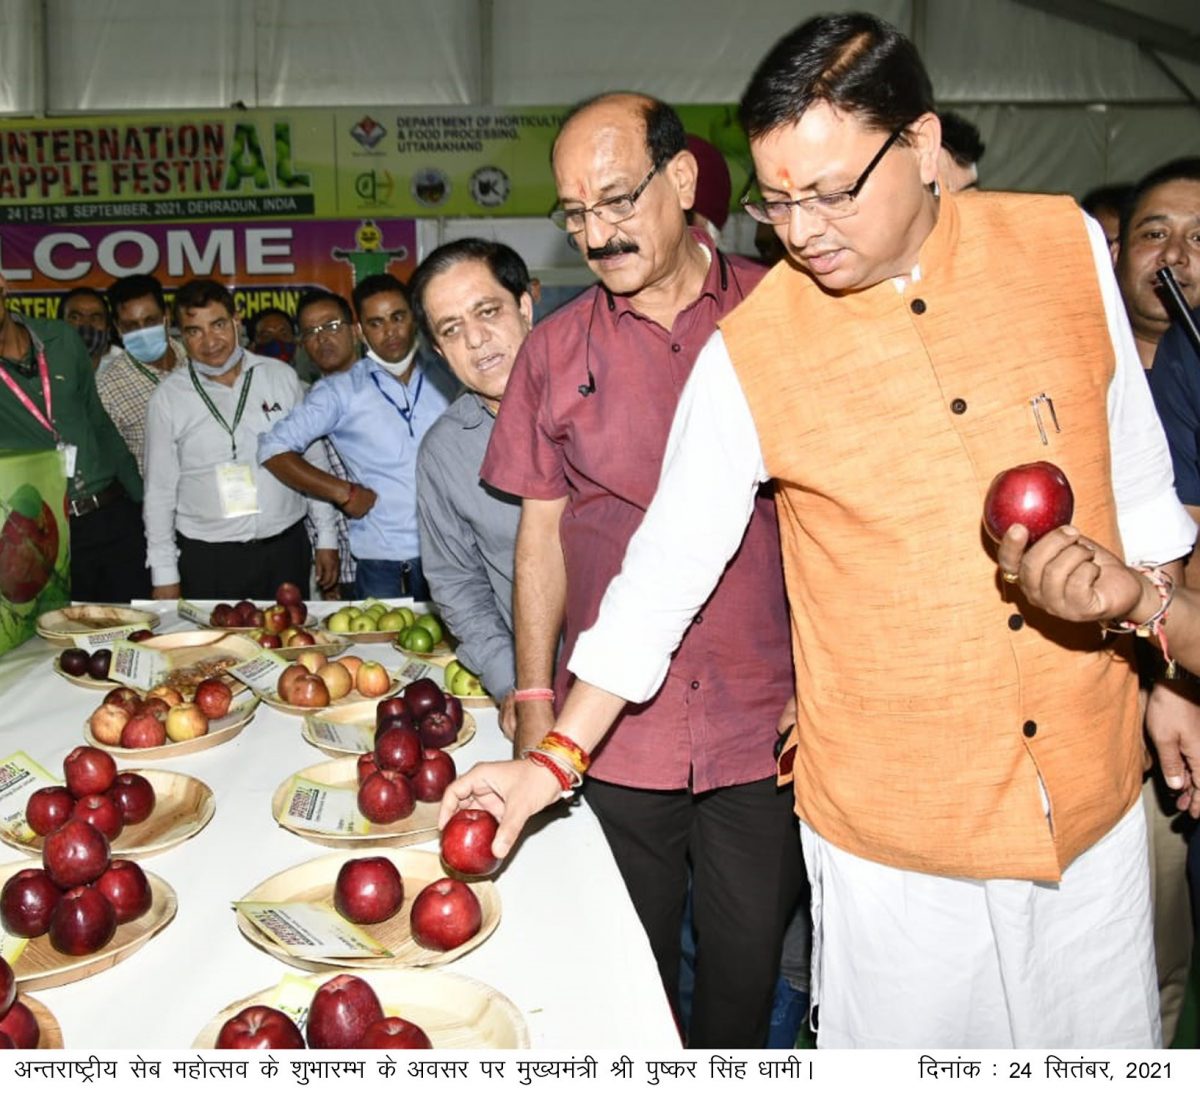 मुख्यमंत्री ने किया अन्तराष्ट्रीय सेब महोत्सव का शुभारम्भ, एप्पल मिशन को दी जाने वाली धनराशि को दुगनी किये जाने की घोषणा की